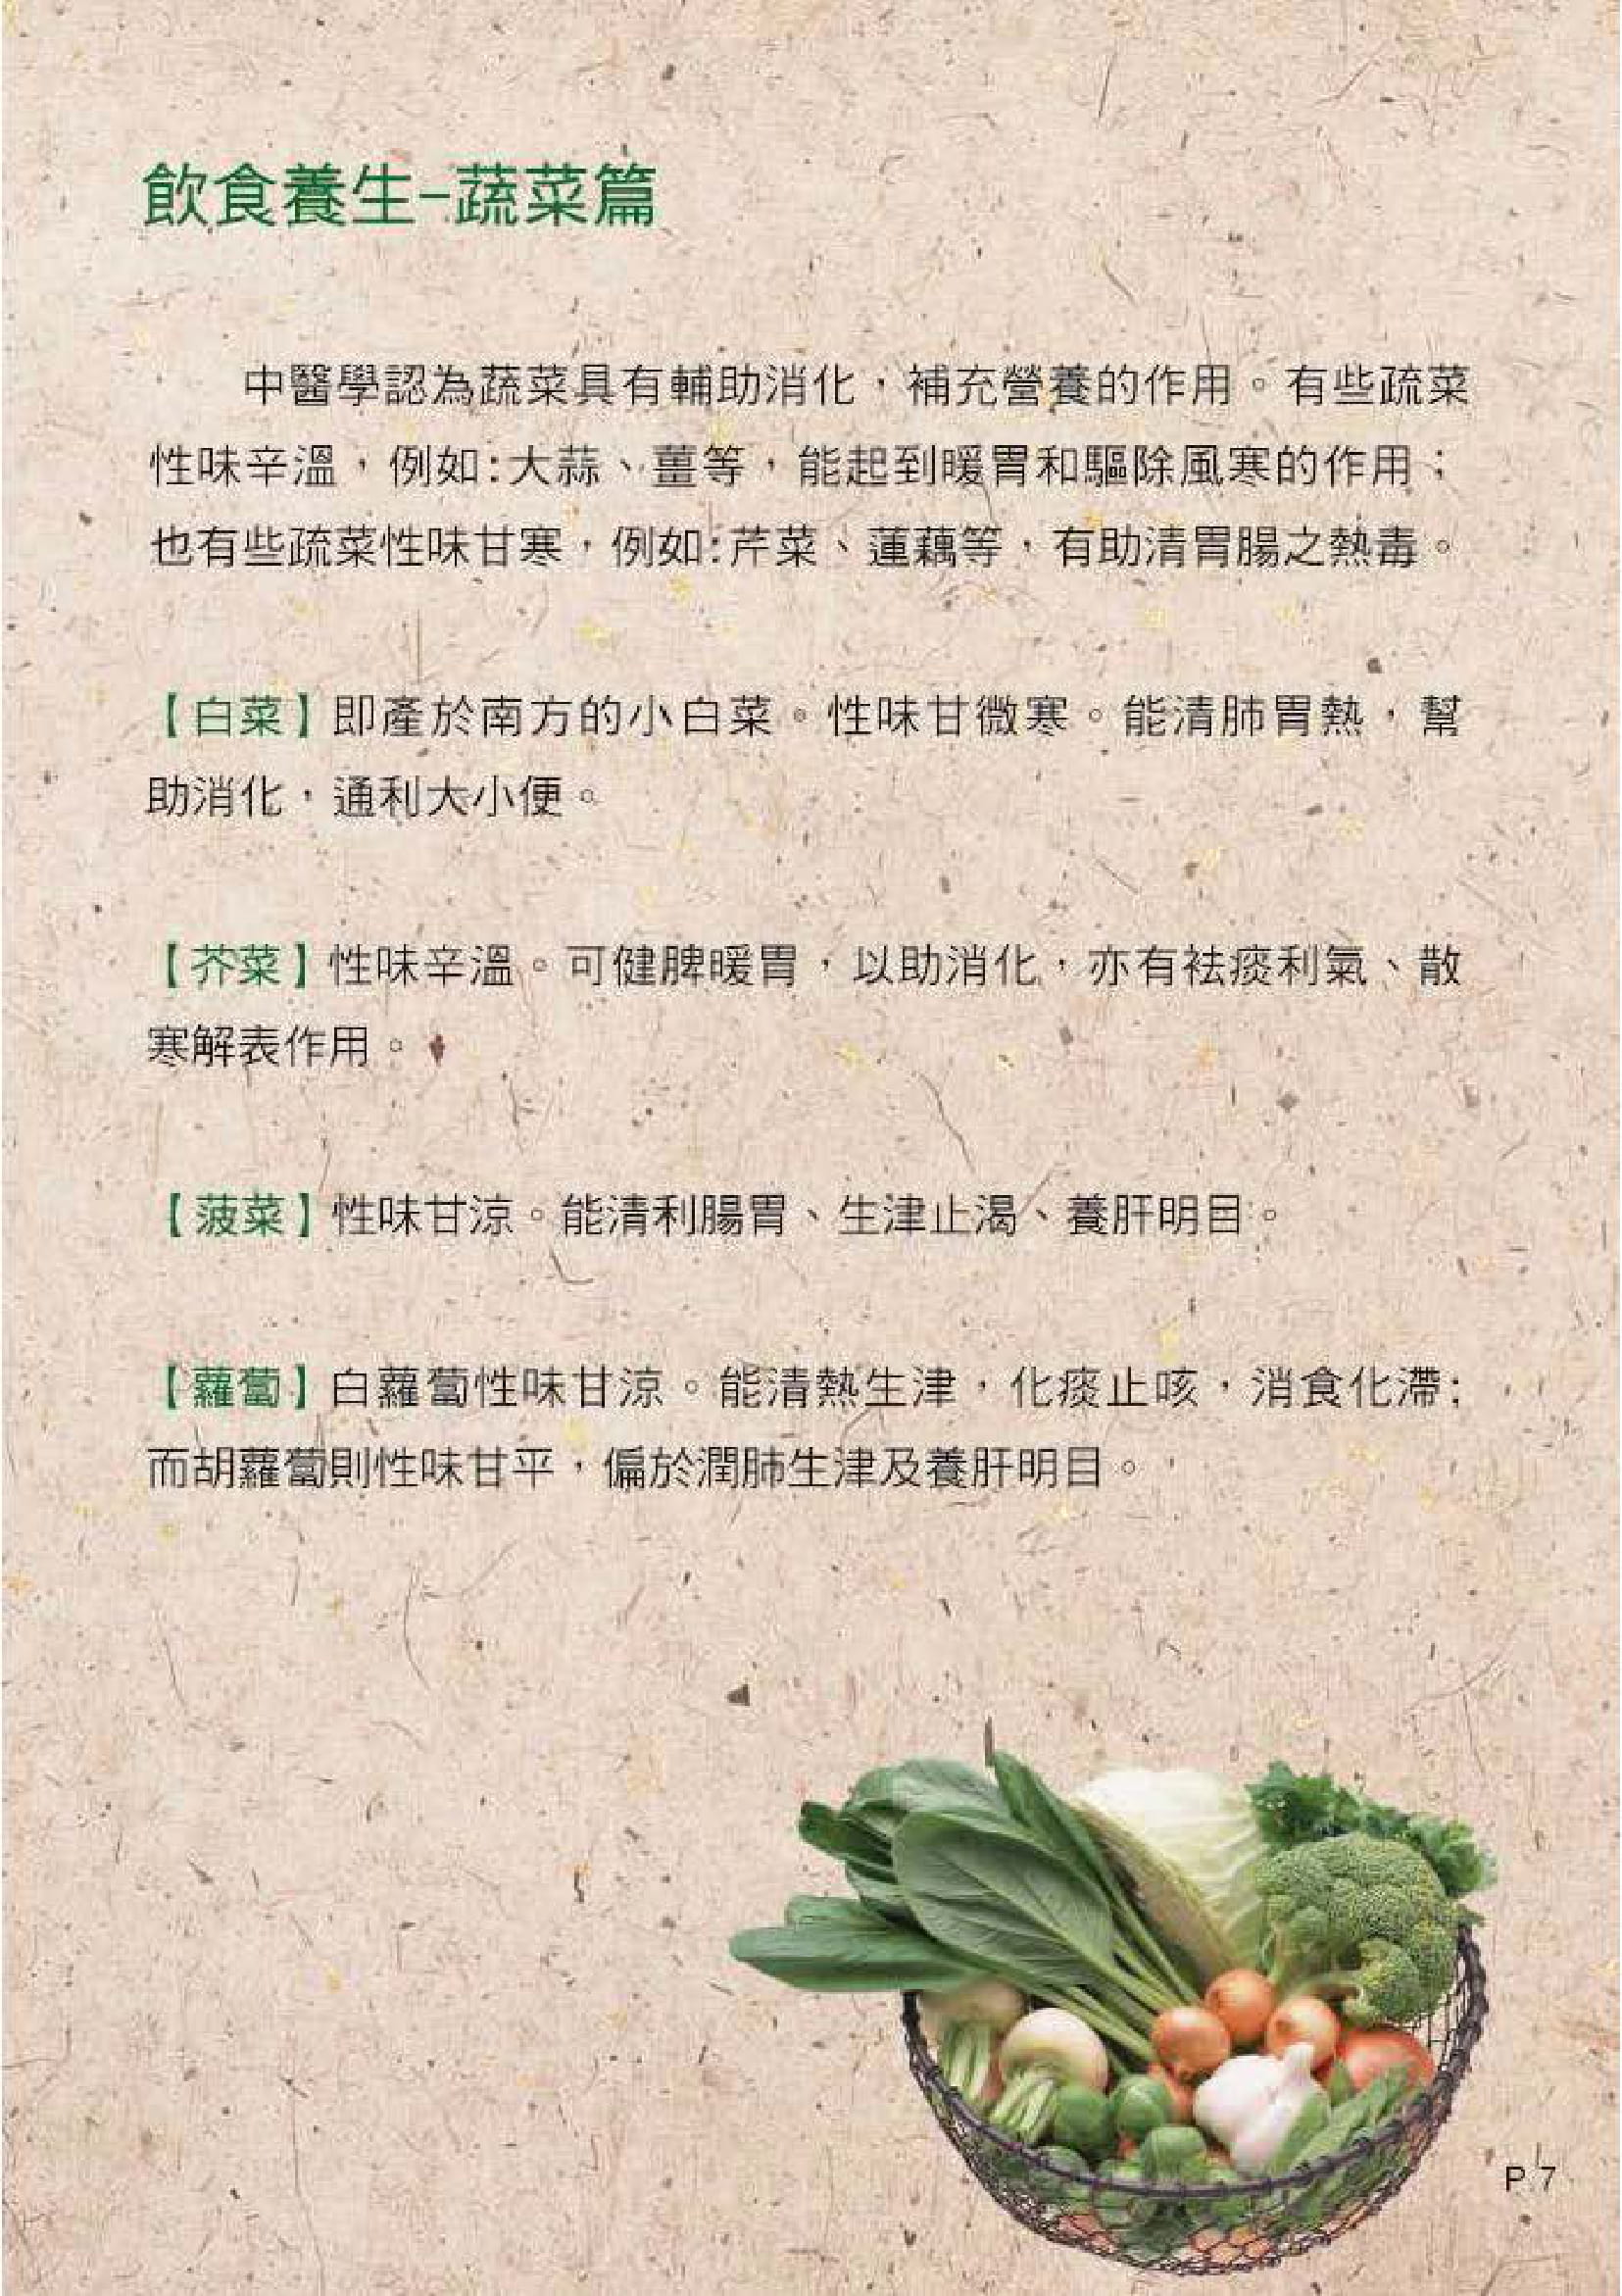 此圖片展示《中醫飲食養生 - 五穀與蔬果》刊物的第7頁